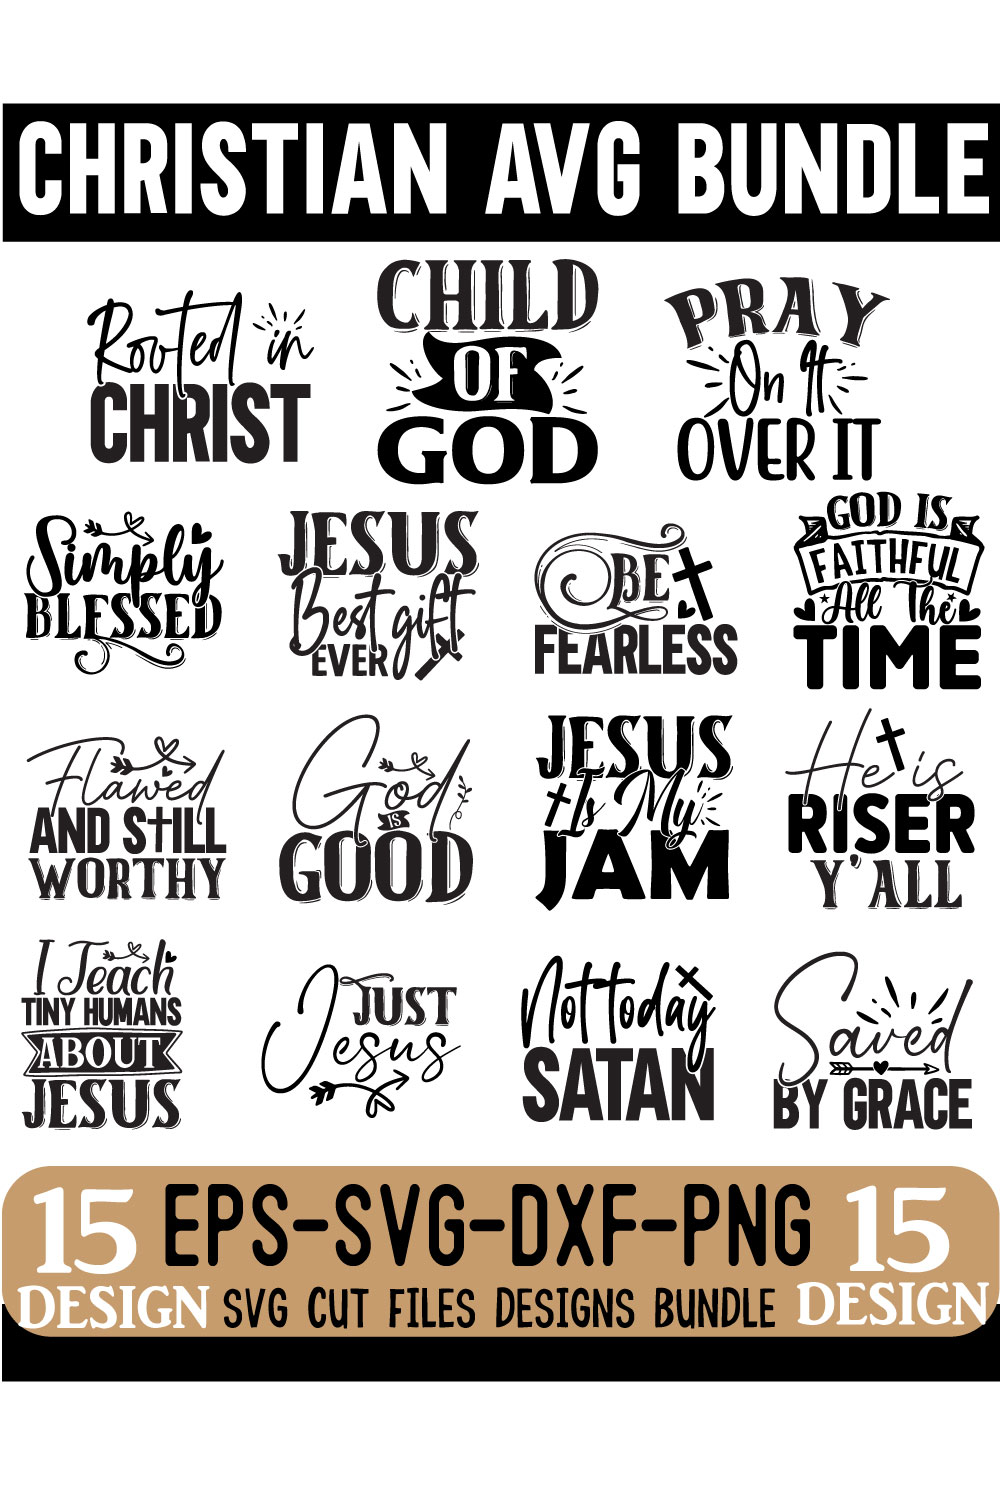 Christian SVG Design Bundle pinterest image.